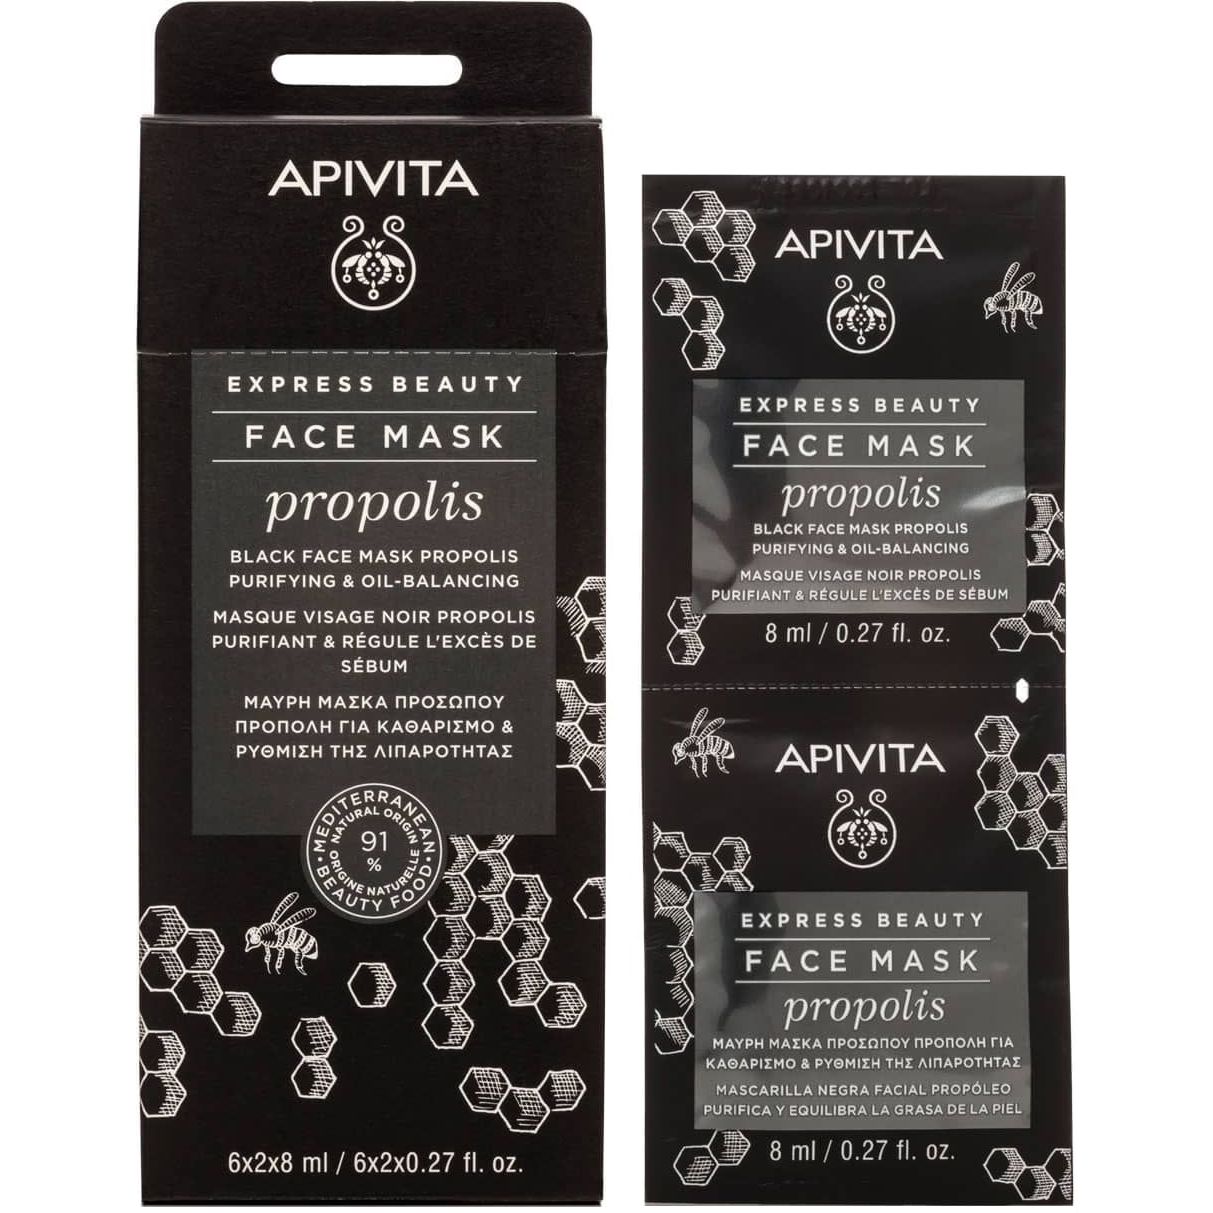 Черная маска для лица Apivita Express Beauty Очищение и баланс жирности, с прополисом, 2 шт. по 8 мл - фото 1